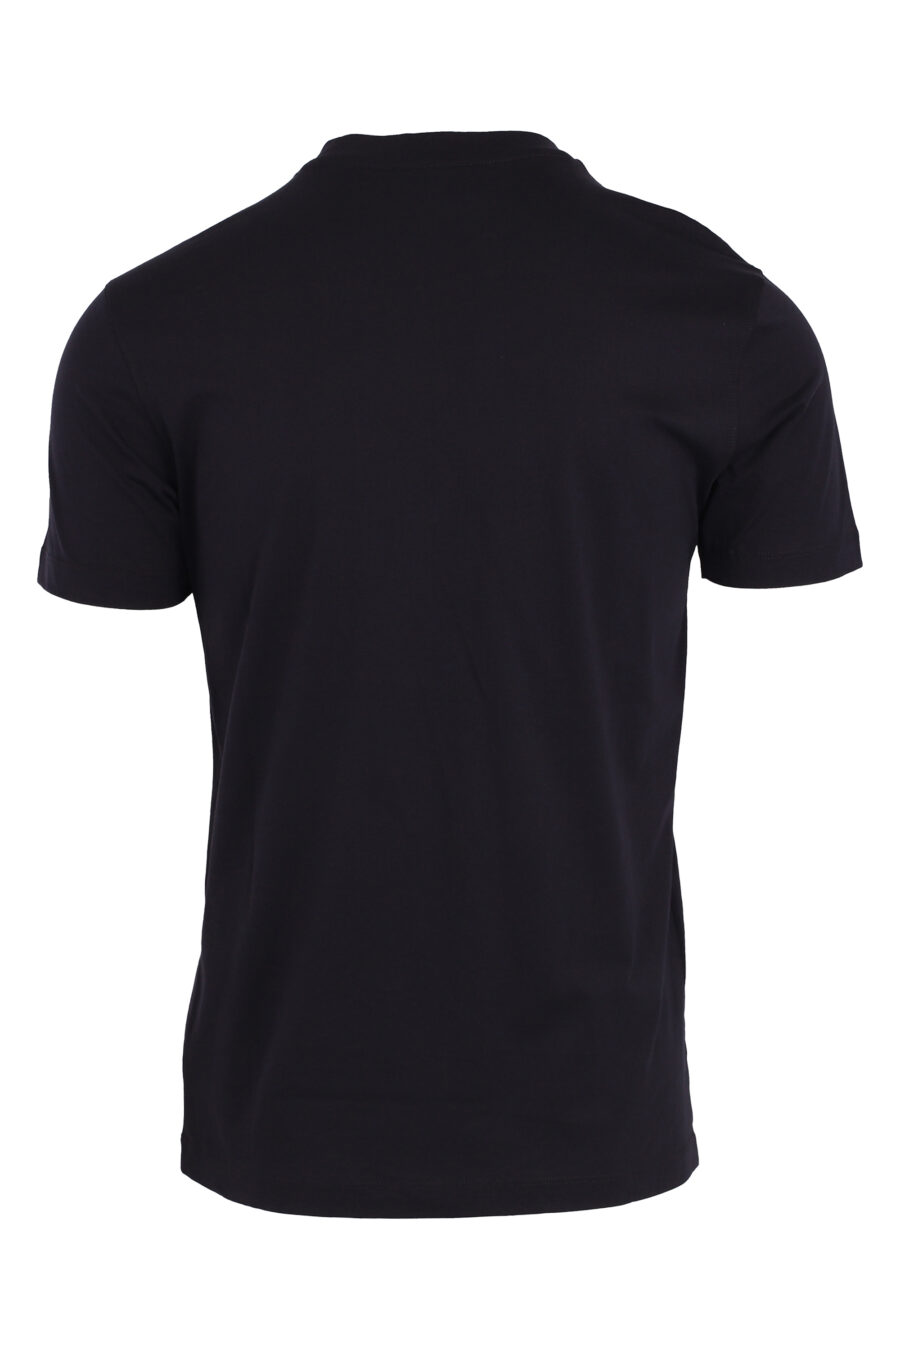 Camiseta azul oscura con maxilogo en terciopelo - IMG 4745